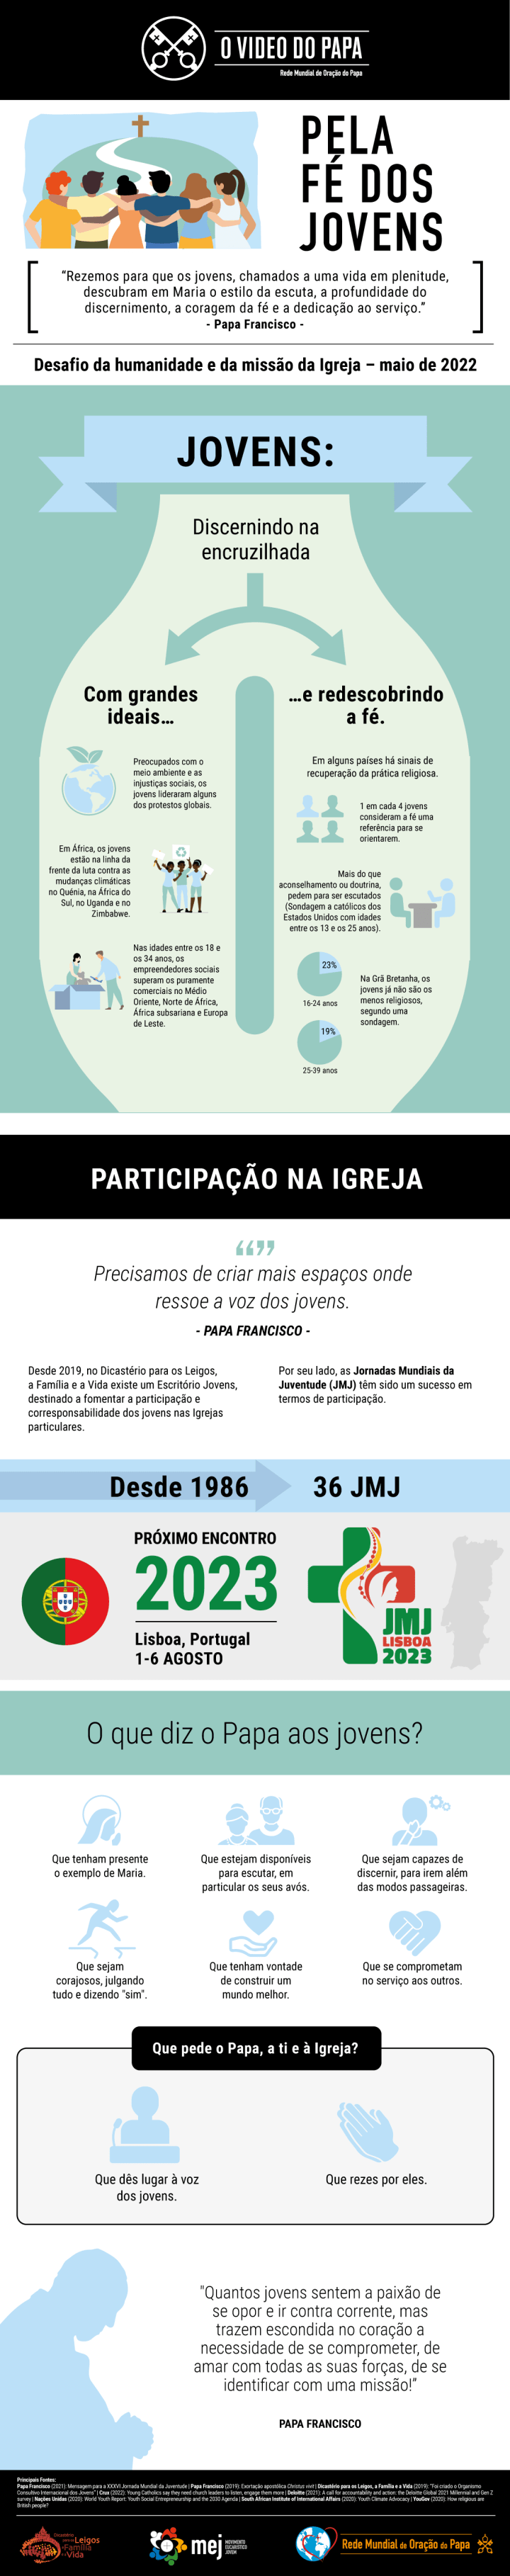 Infographic-TPV-5-2022-PT-Pela-fe-dos-jovens.png